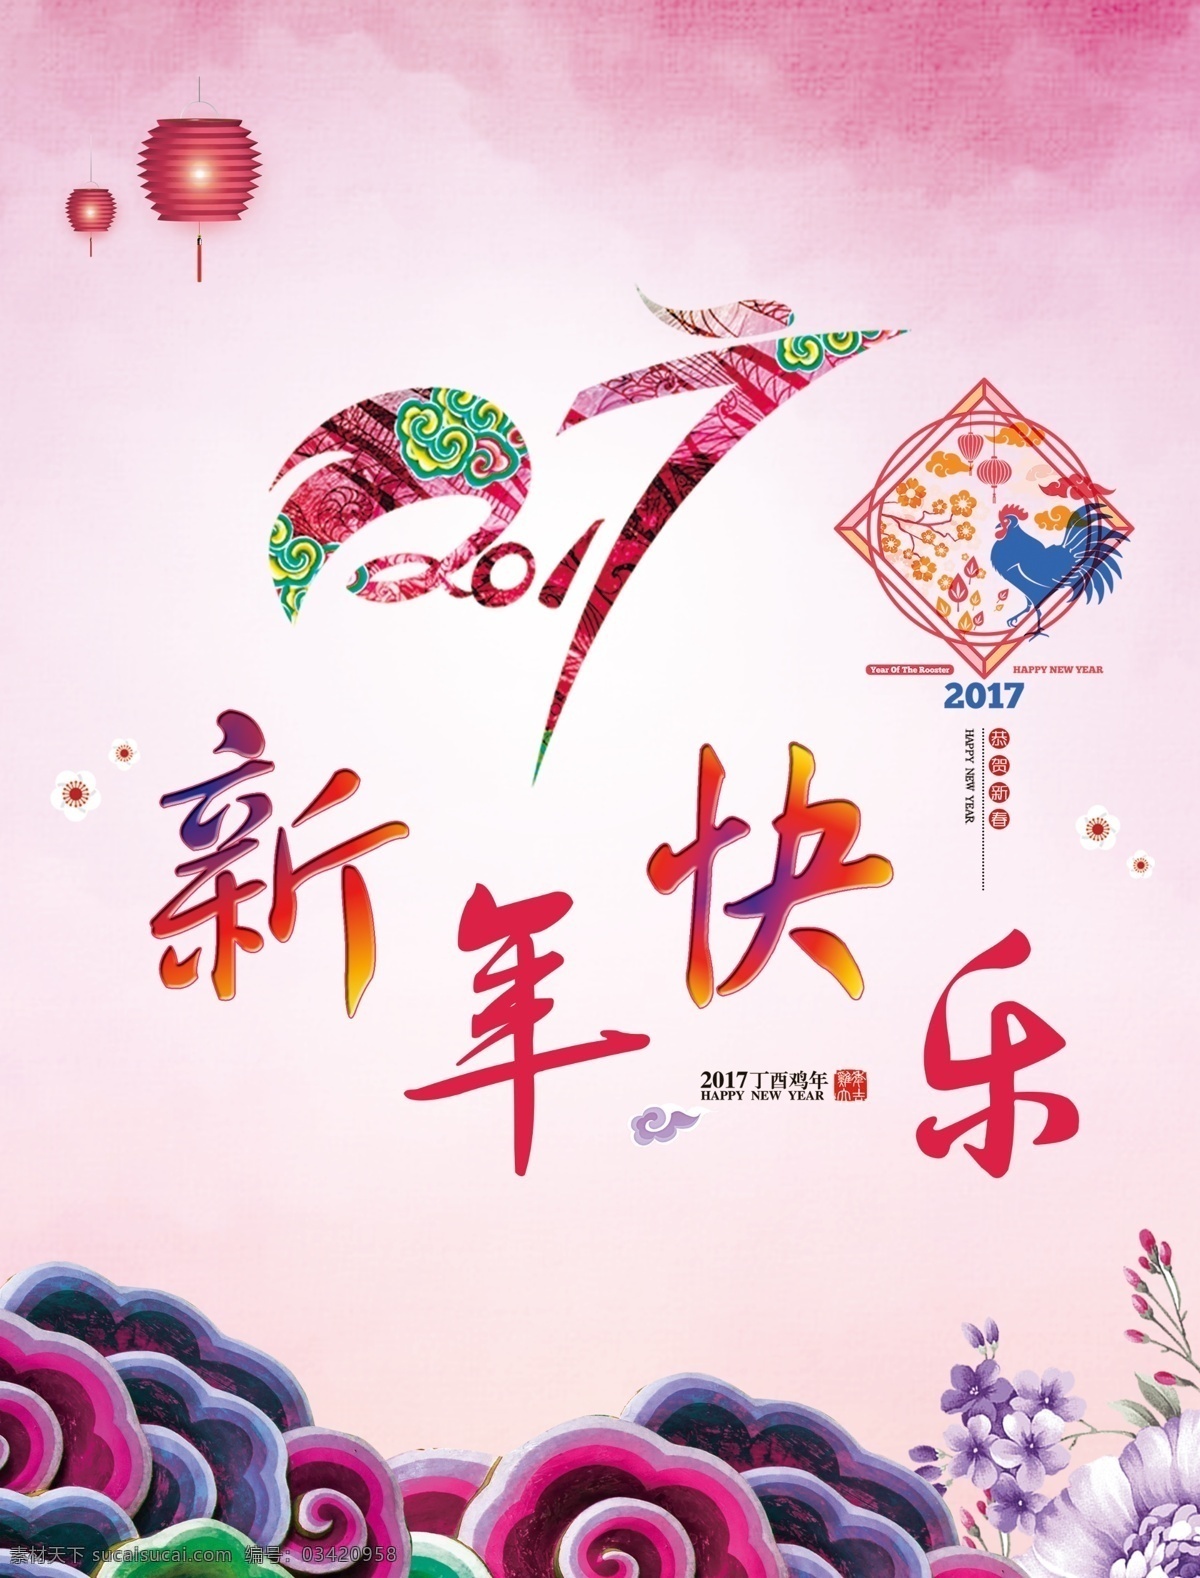 新年 快乐 2017 年 鸡年 新春海报 海报 中国 传统 元素 迎春节 手绘